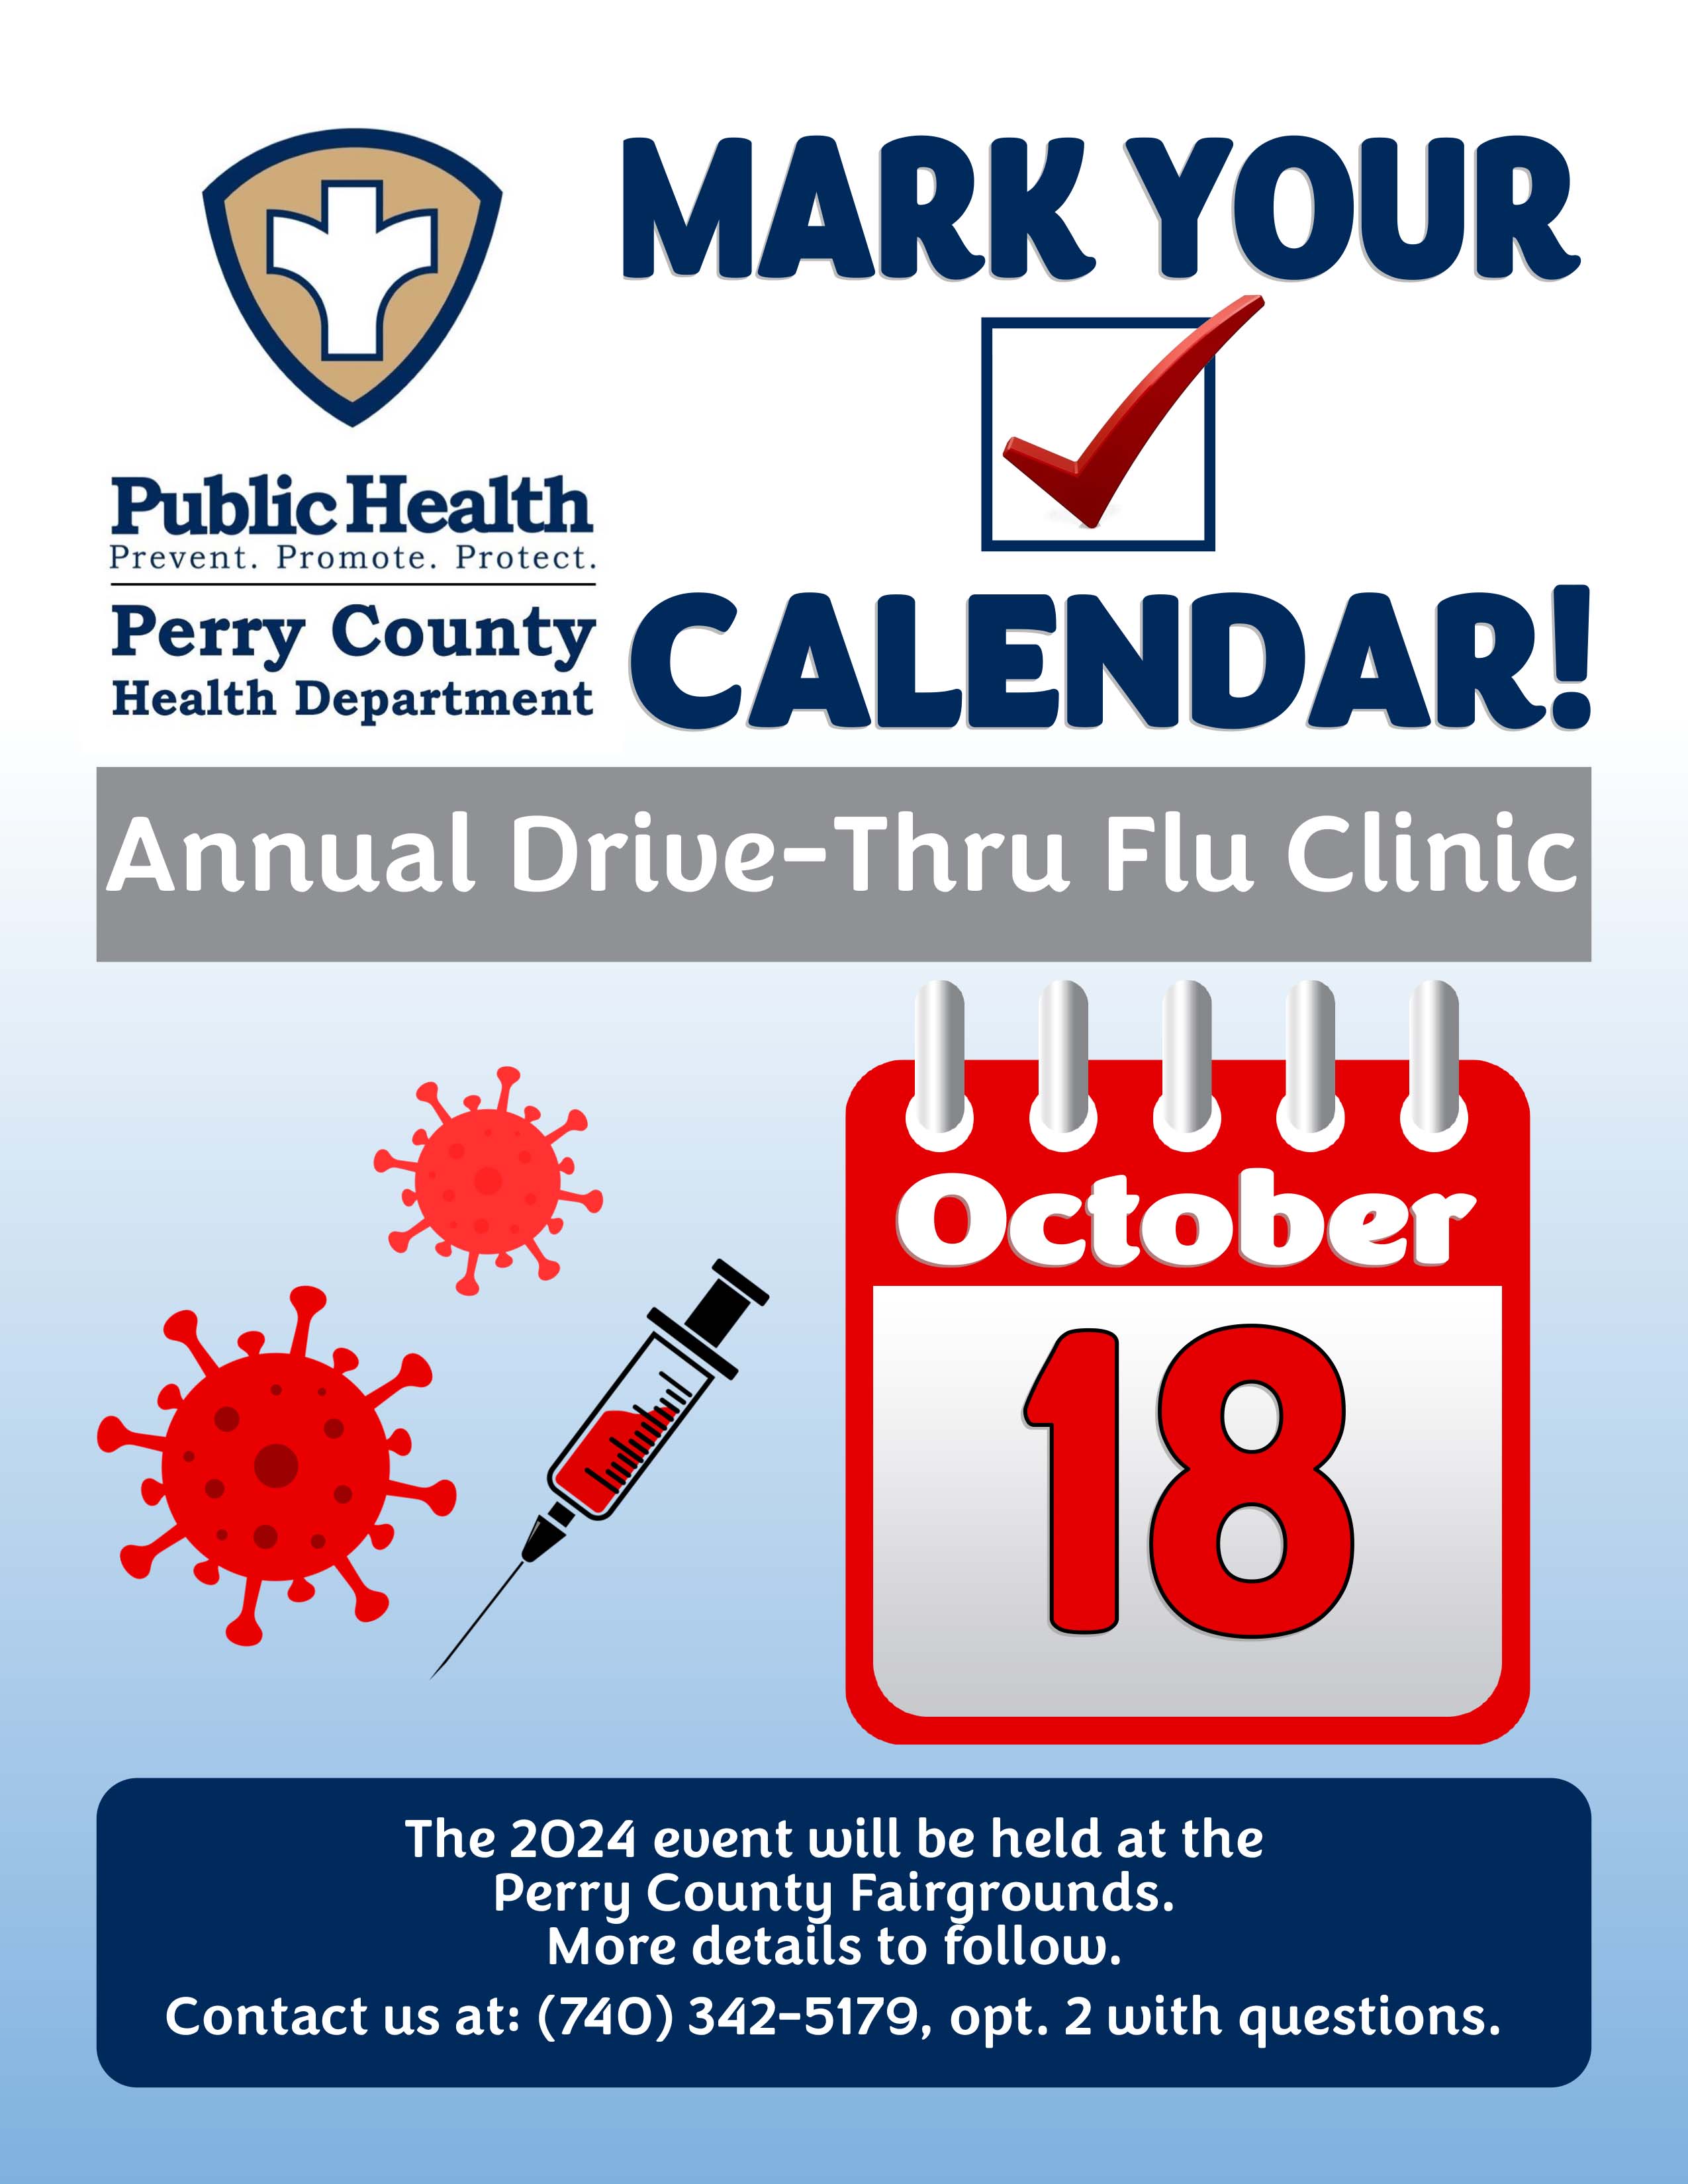 Annual Drive-Thru Flu Clinic ad